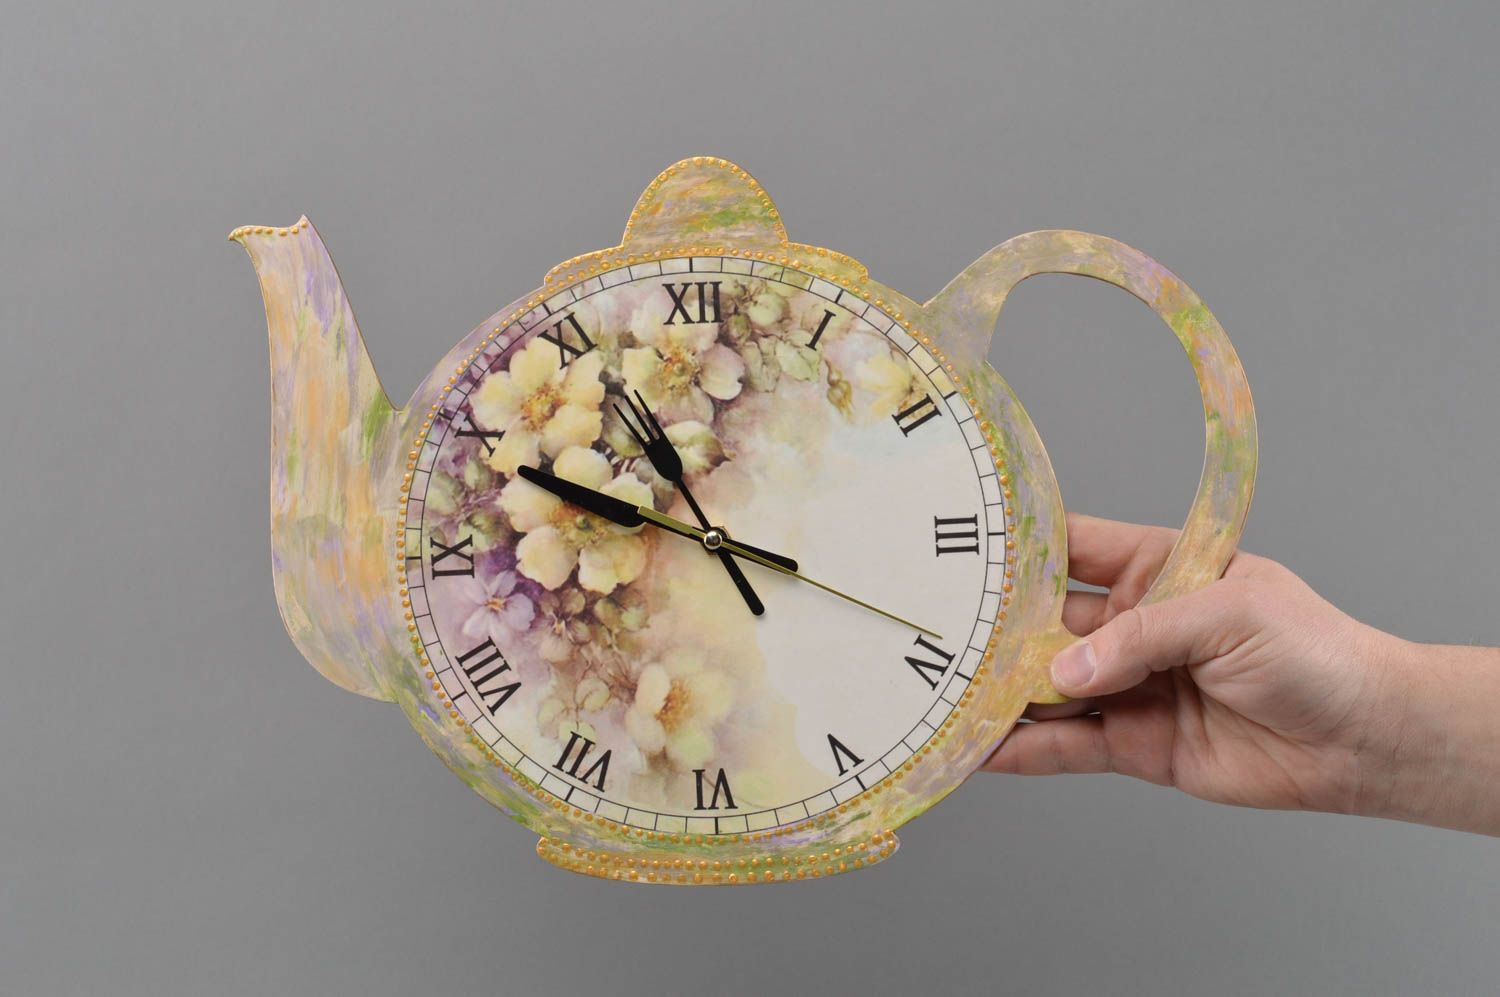 Фанерные часы в технике декупаж в виде чайника ручной работы оригинальные фото 4